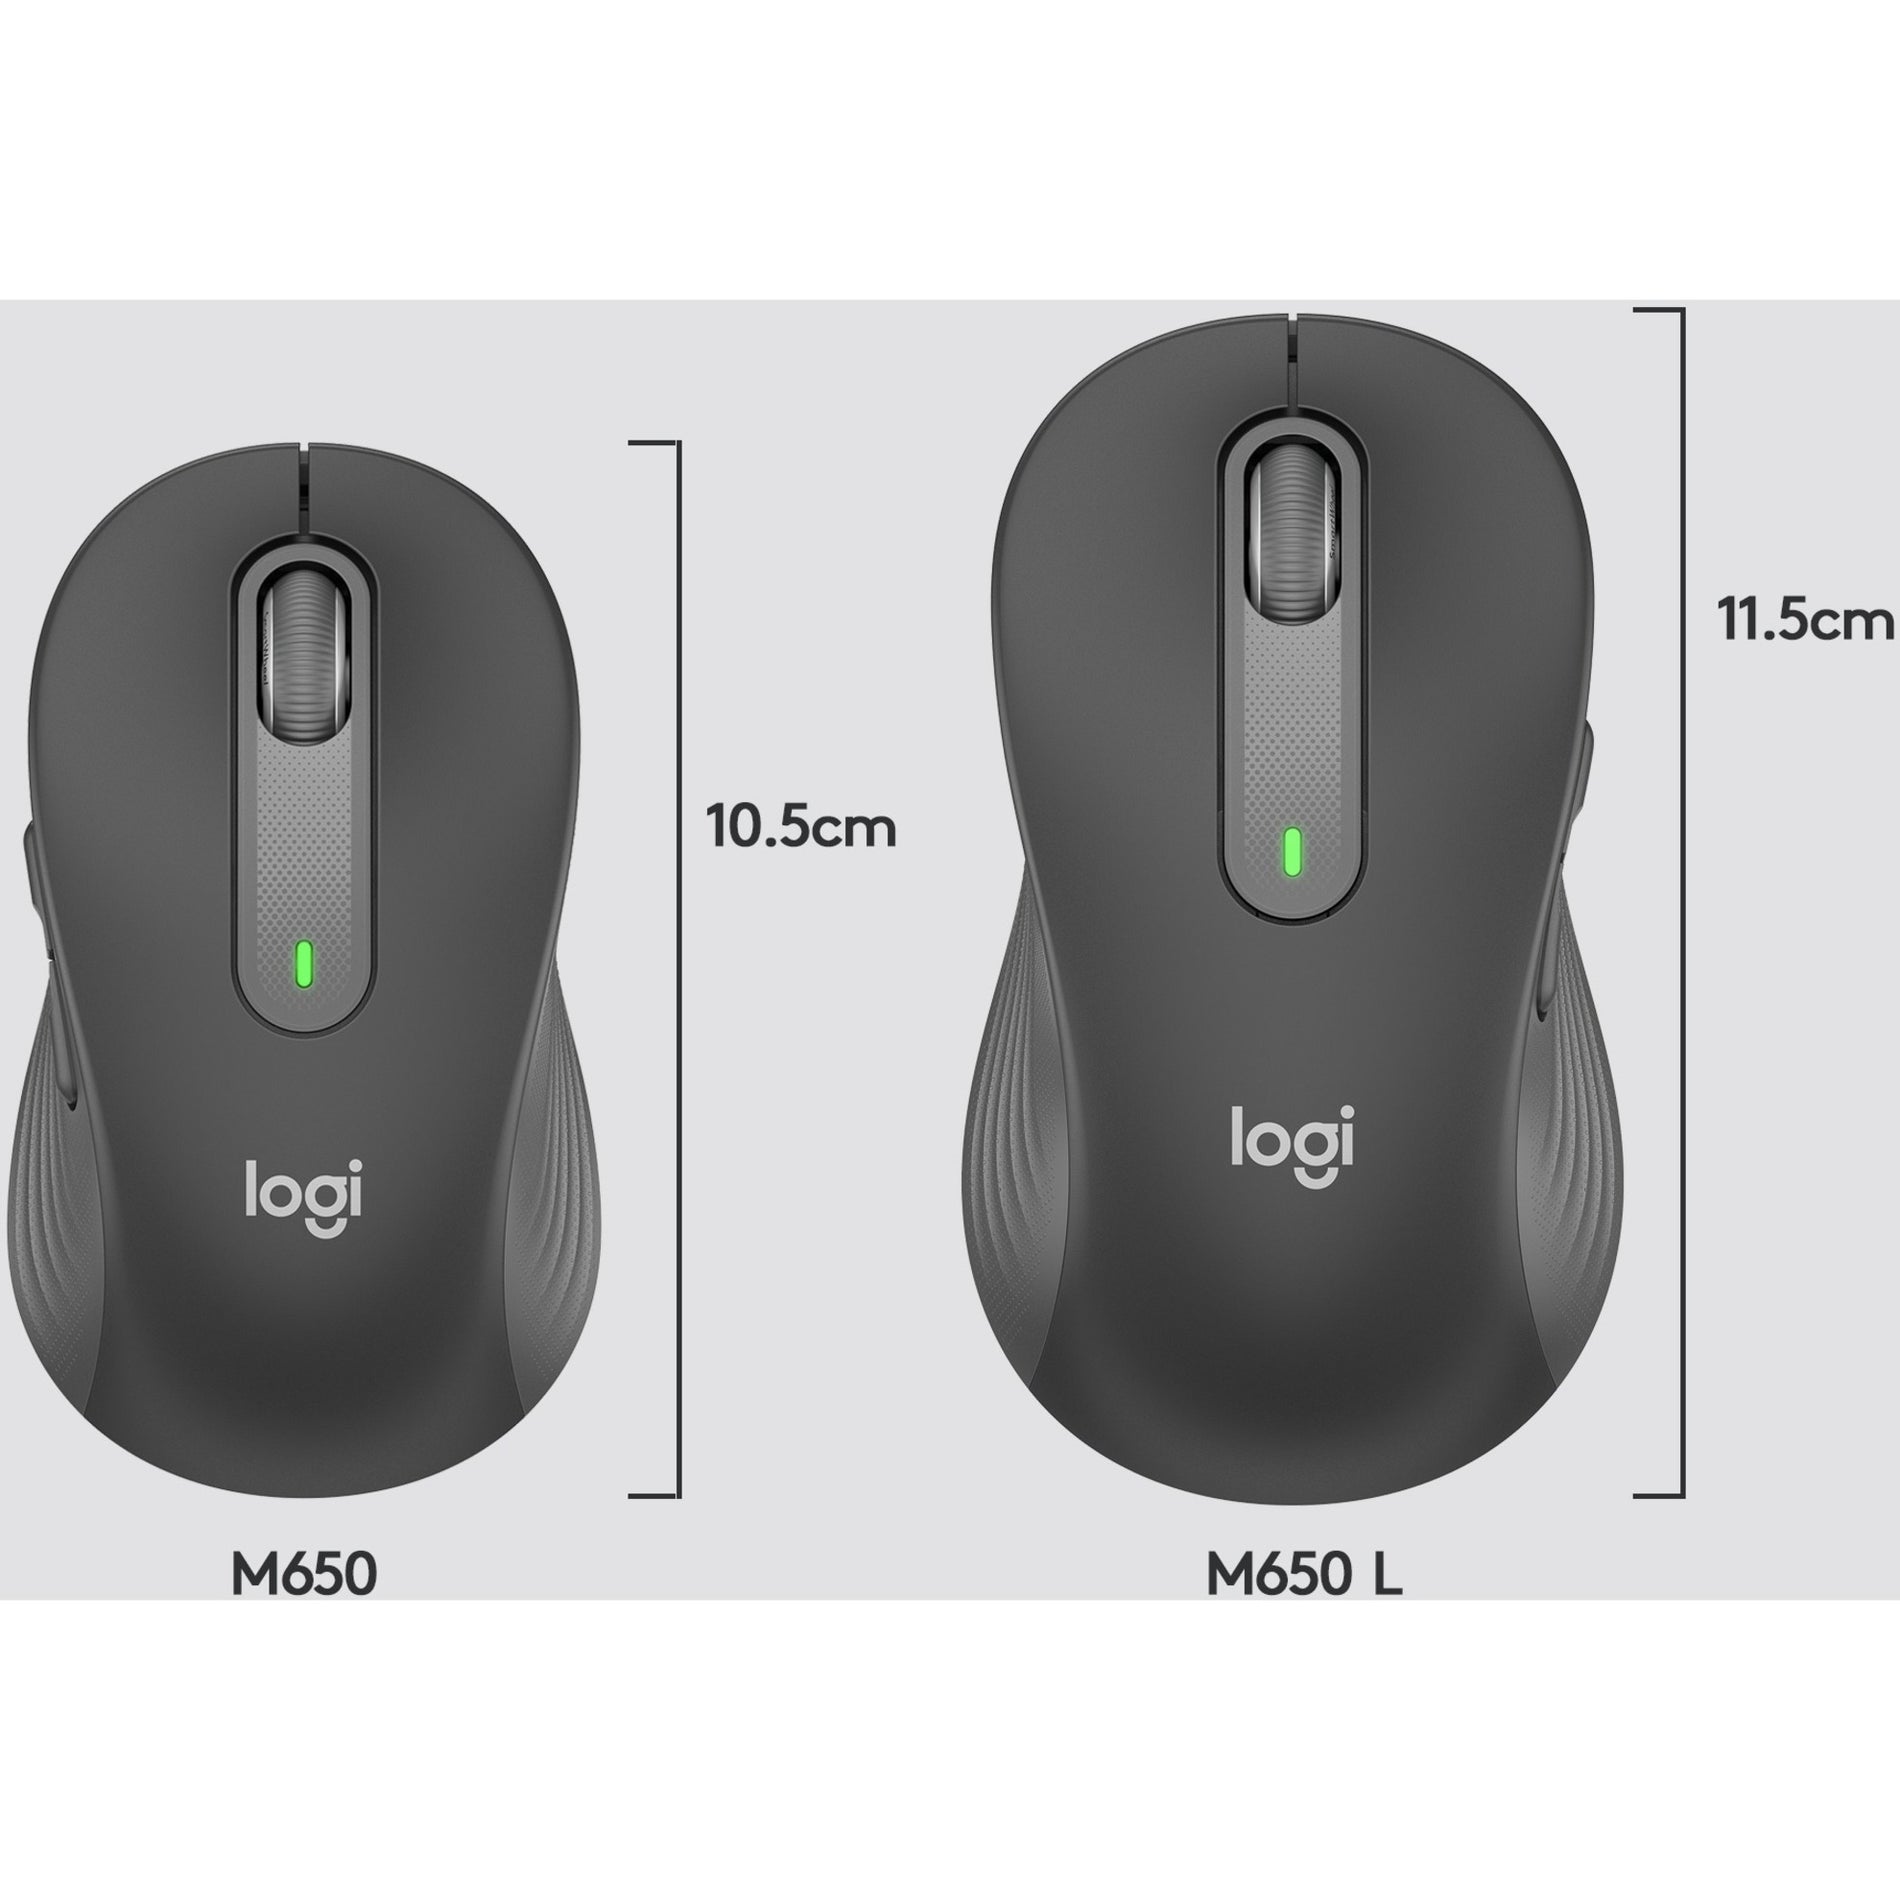 Logitech 910-006250 Signature M650 Maus Upgrade zu Intelligenterem Bildlauf Besserem Komfort und Mehr Produktivität